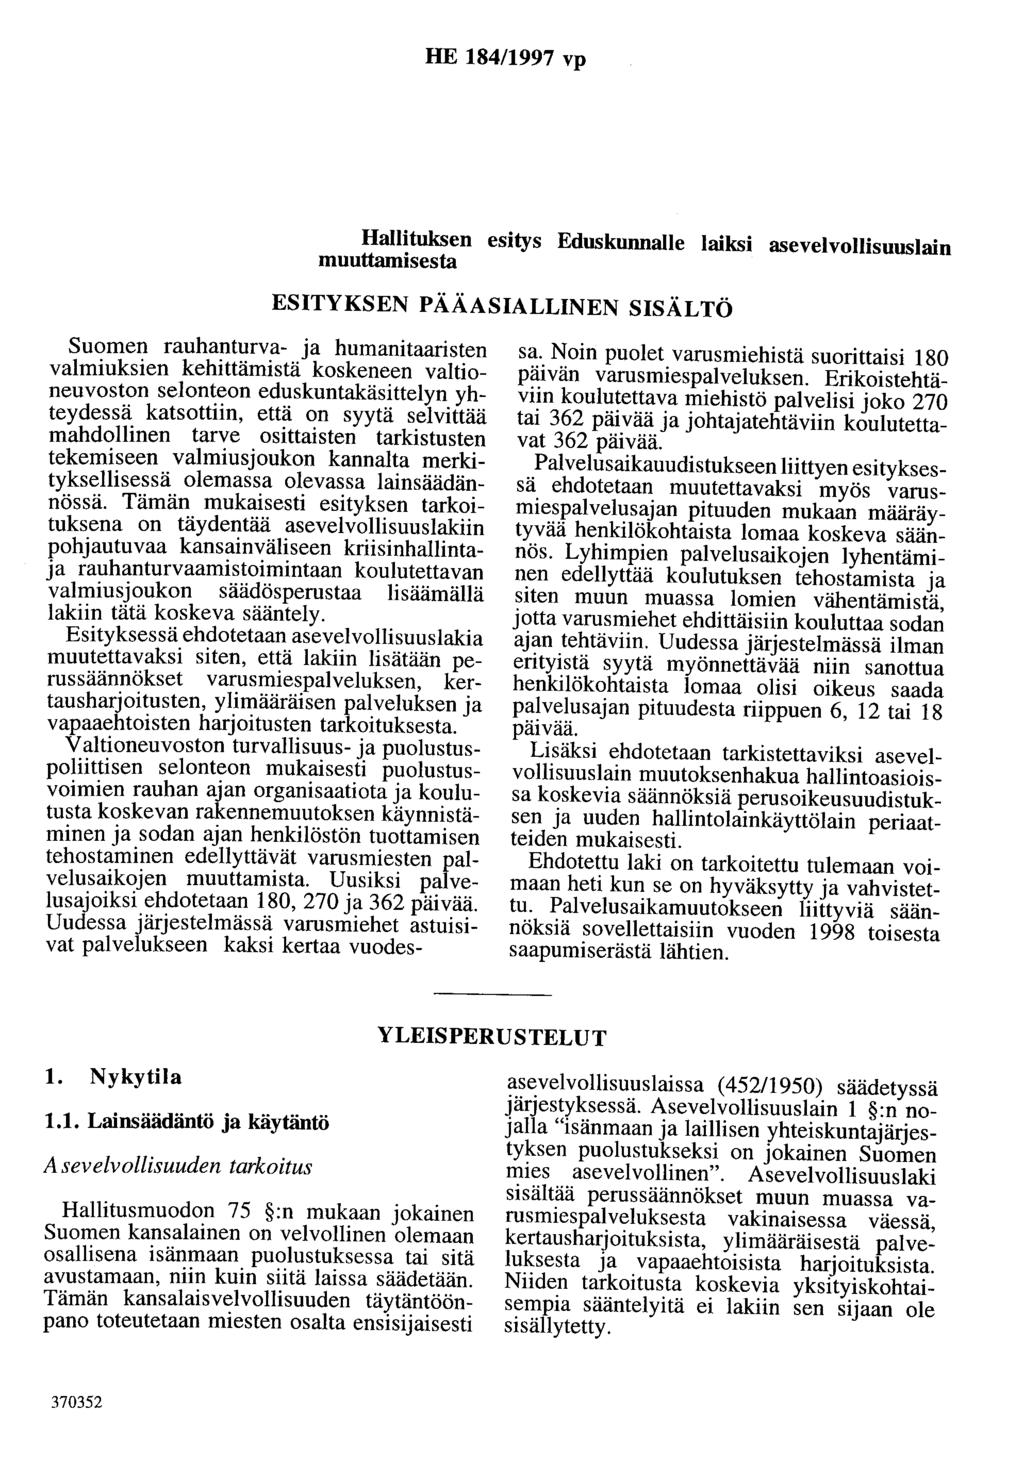 HE 184/1997 vp Hallituksen esitys Eduskunnalle laiksi asevelvollisuuslain muuttamisesta ESITYKSEN PÄÄASIALLINEN SISÄLTÖ Suomen rauhanturva- ja humanitaaristen valmiuksien kehittämistä koskeneen